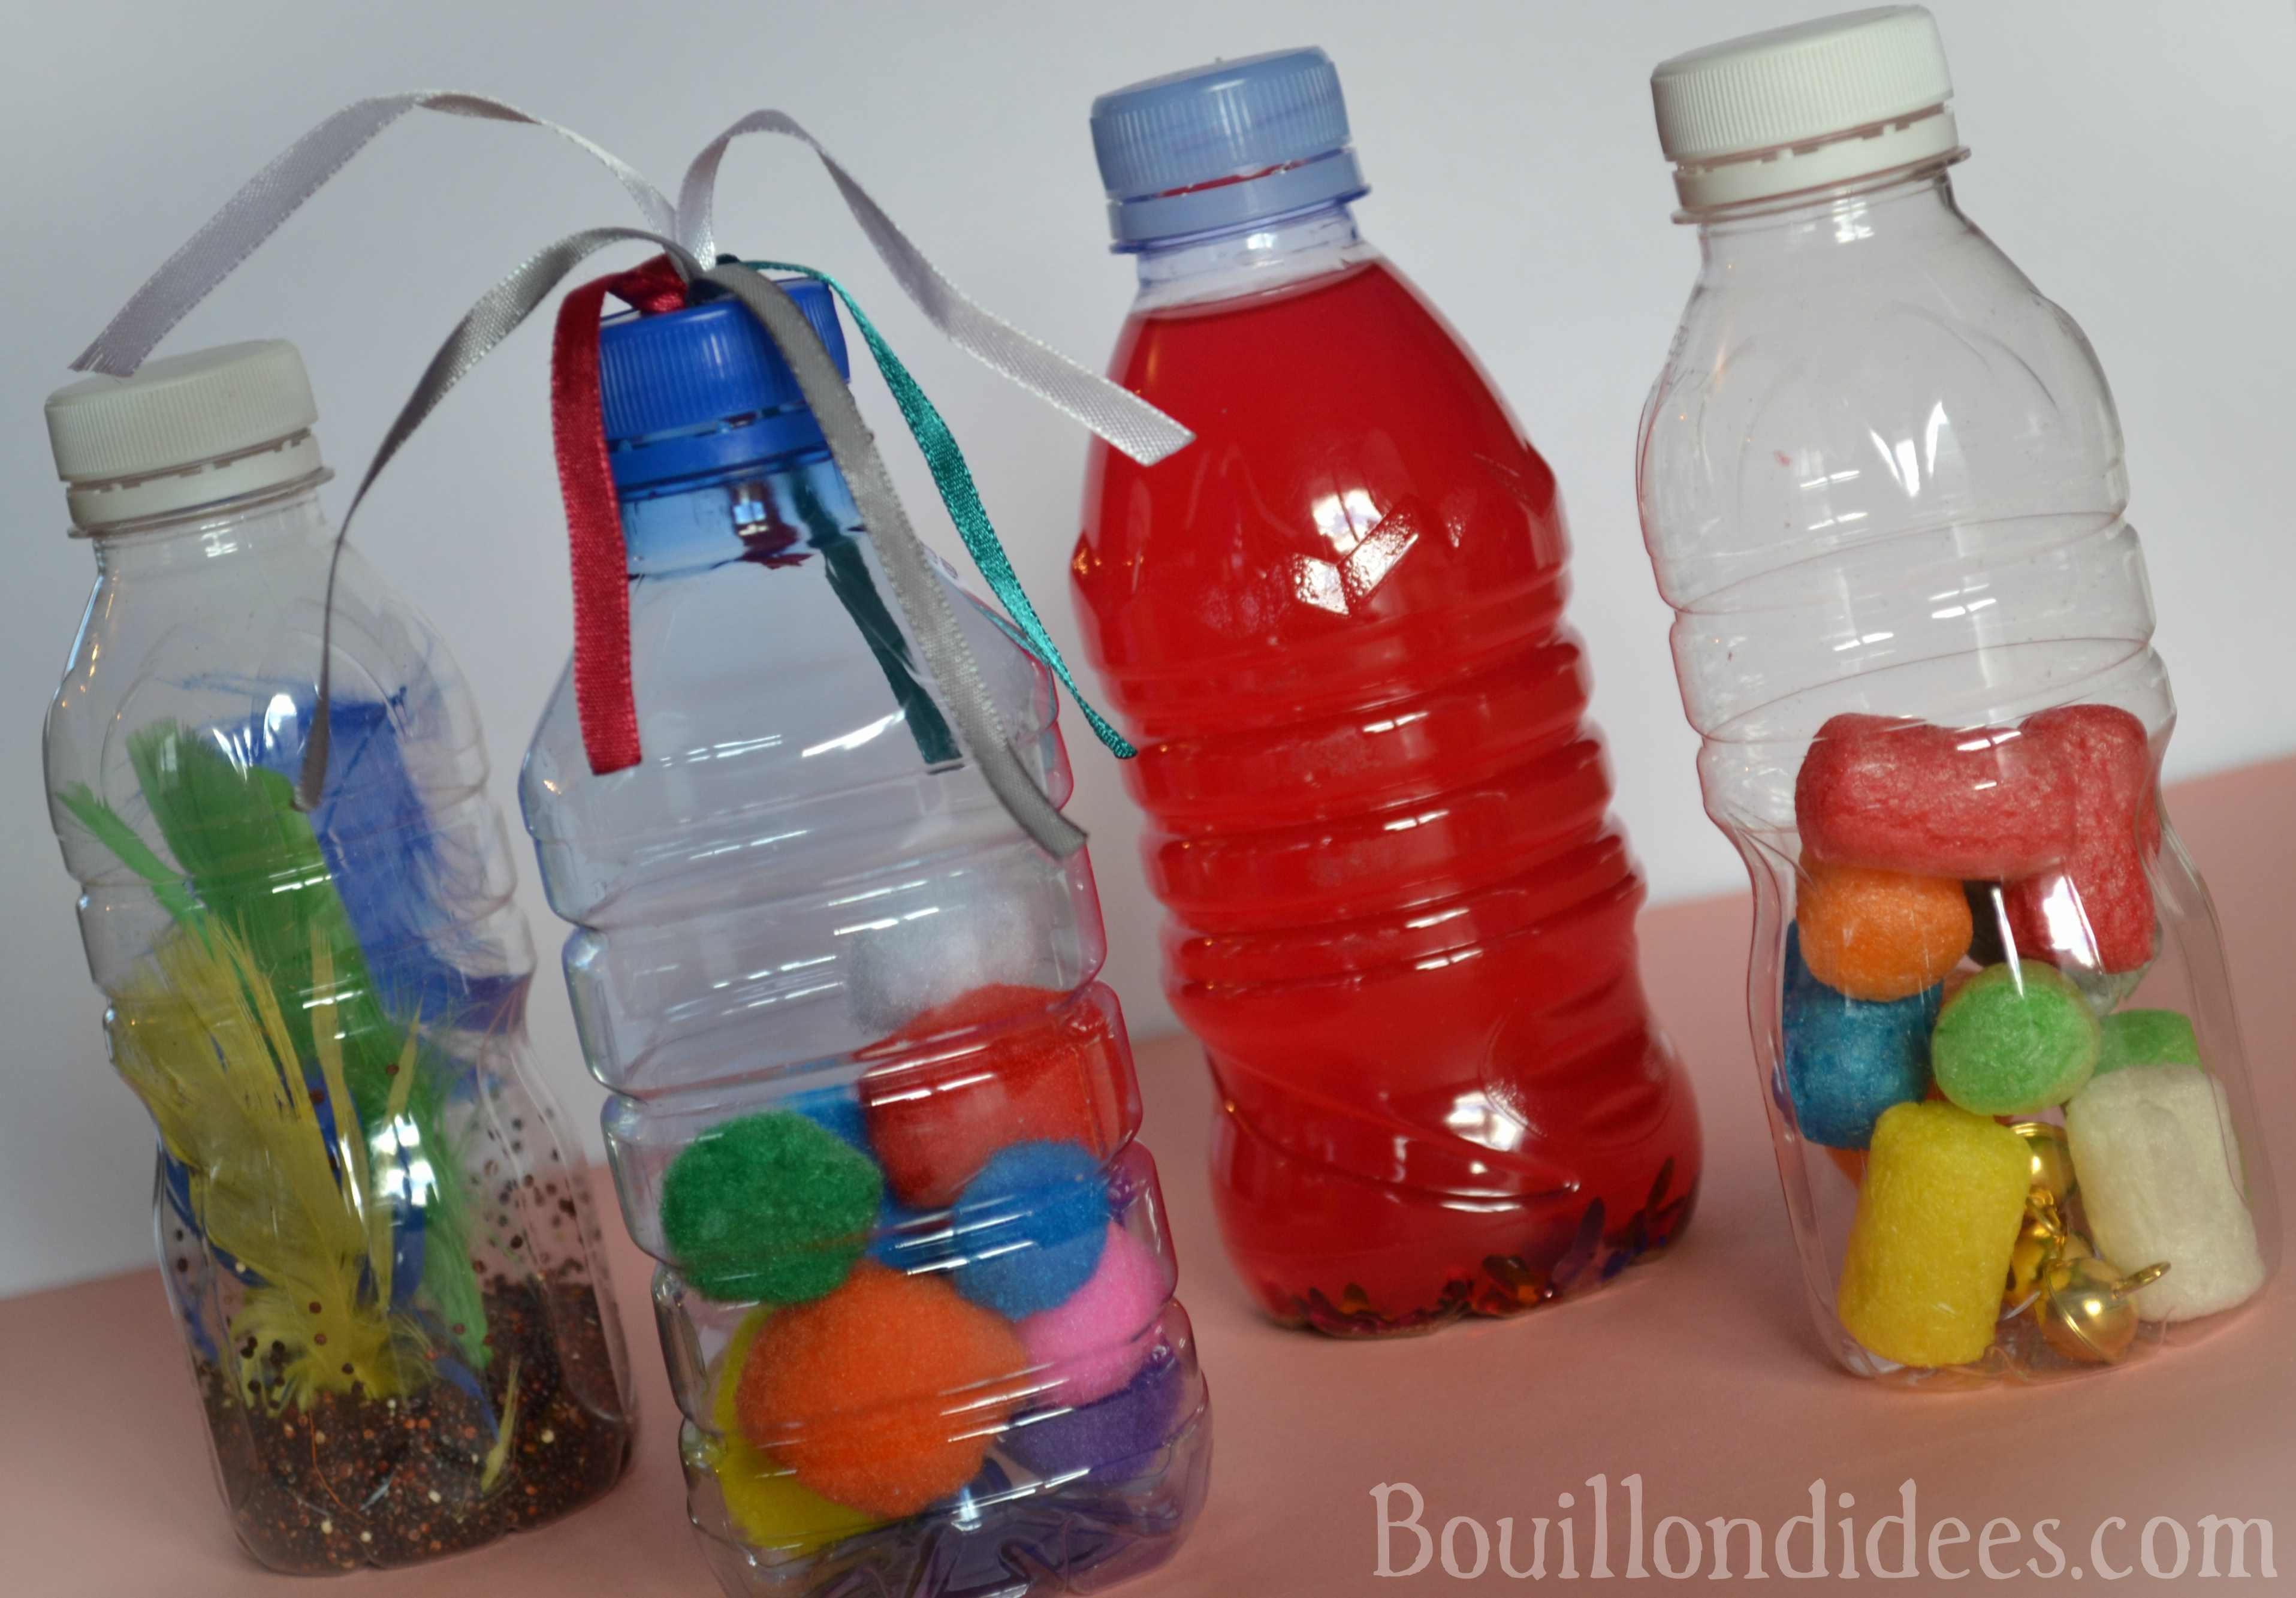 Les bouteilles sensorielles - une activité Montessori Tête à modeler